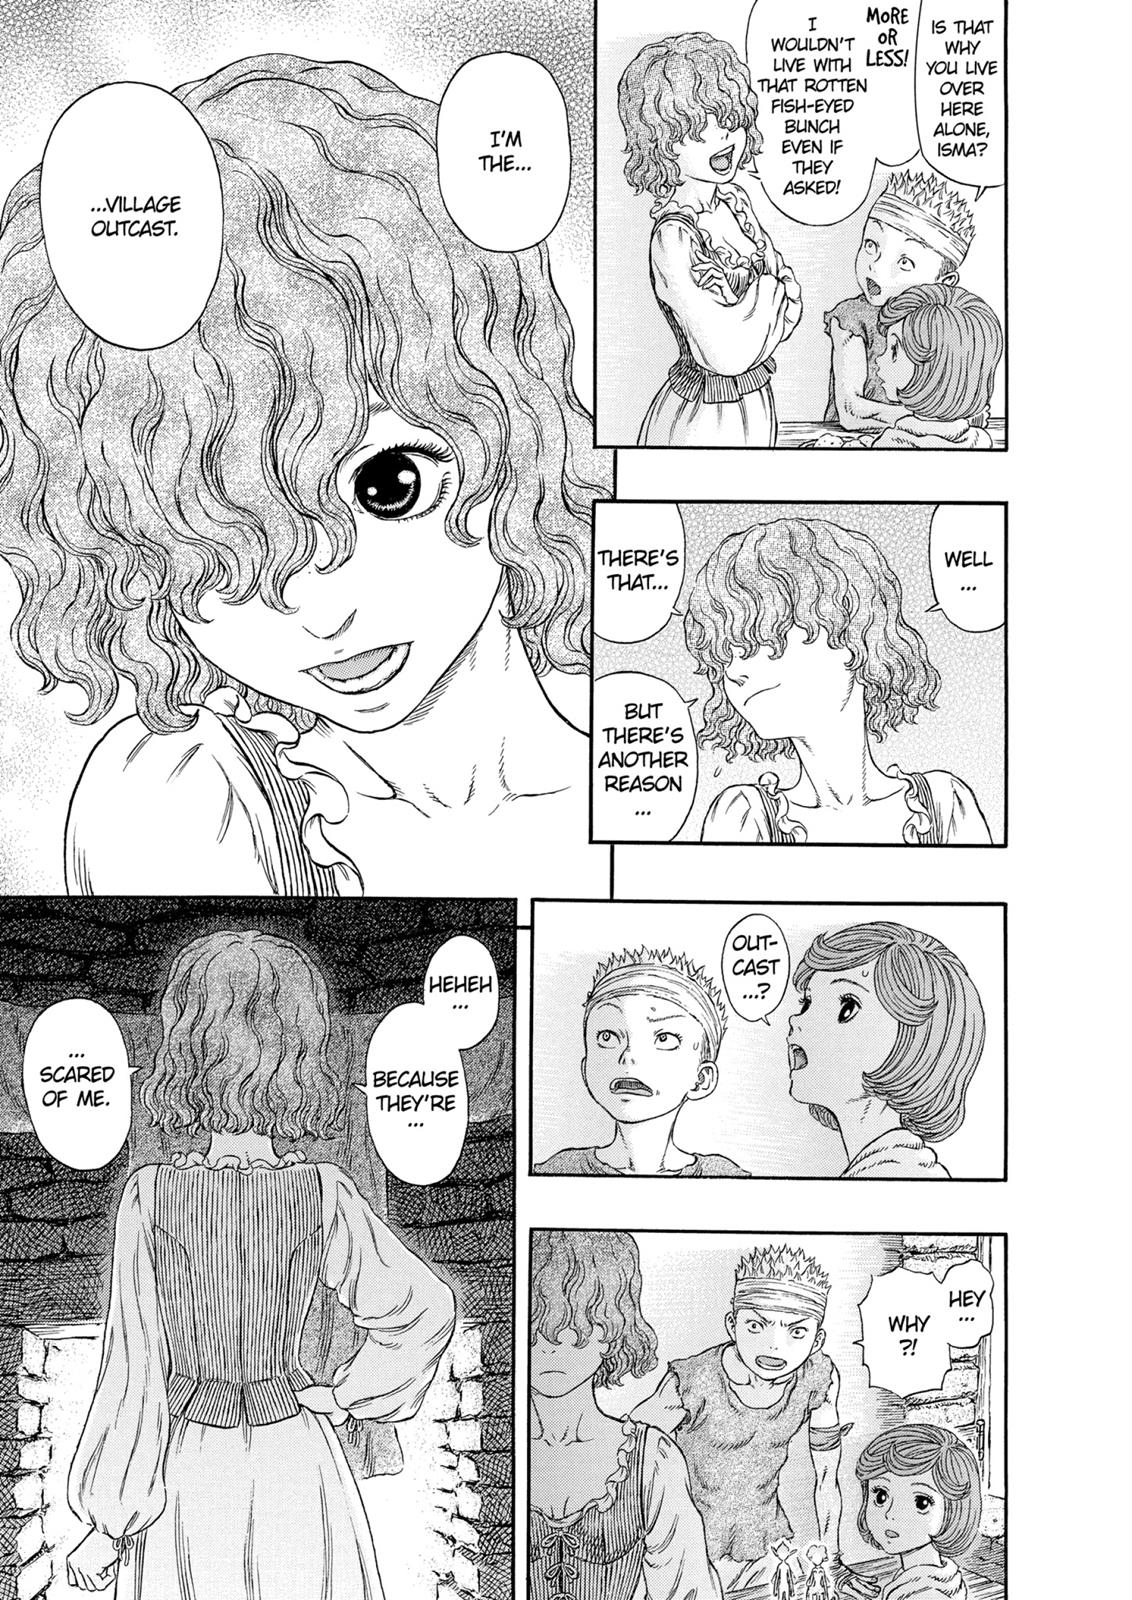 Berserk Manga Chapter 313 image 04